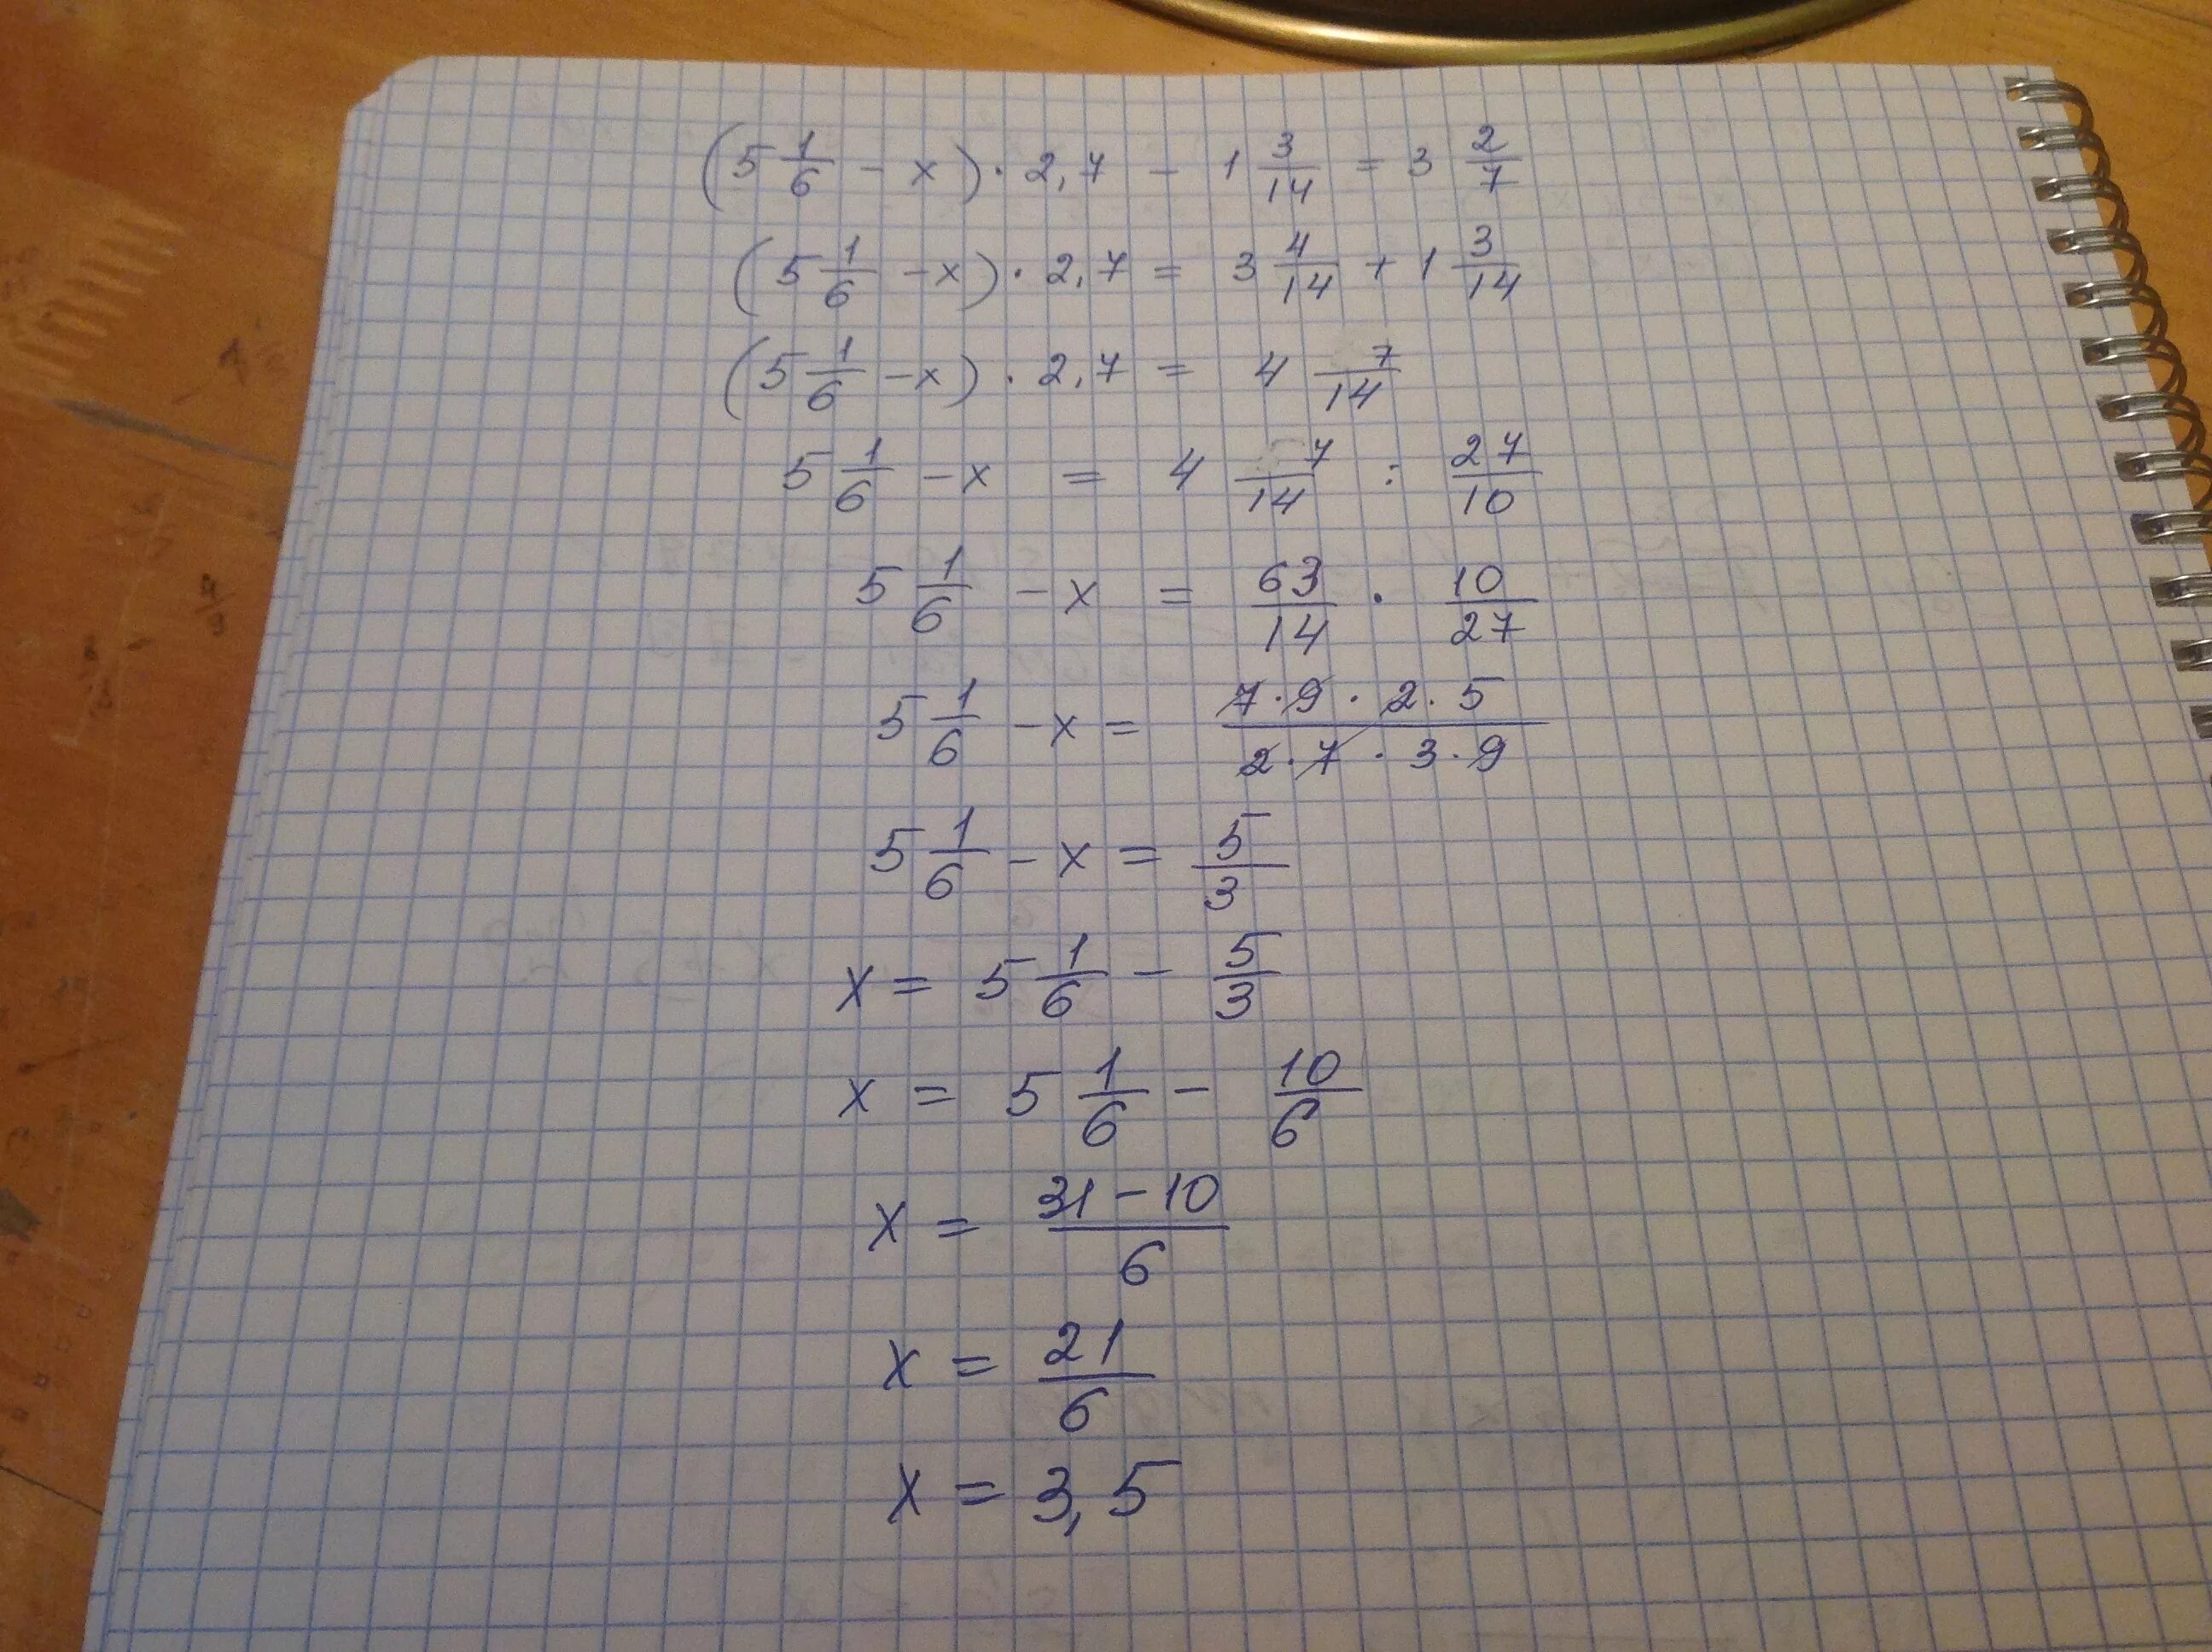 4x 7 3 x 1 решение. 2/X-3=7/X+1. X-2/3=3x+1/7. 3,5/√1-X=1 1/6. 5-2(1-Х)=7x+6.